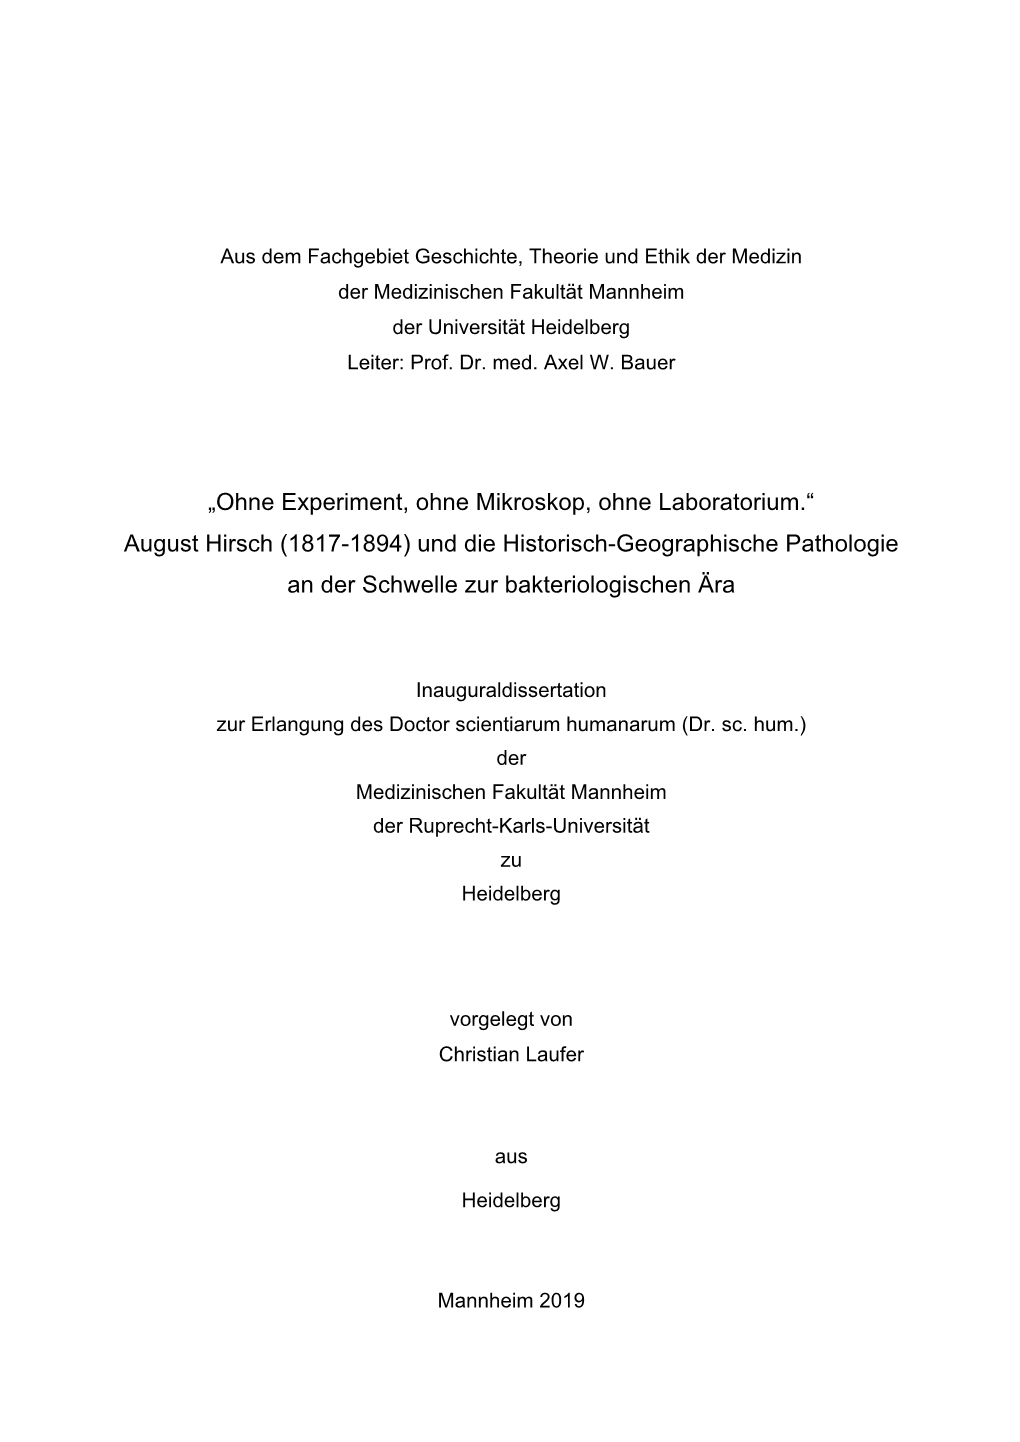 August Hirsch (1817-1894) Und Die Historisch-Geographische Pathologie an Der Schwelle Zur Bakteriologischen Ära